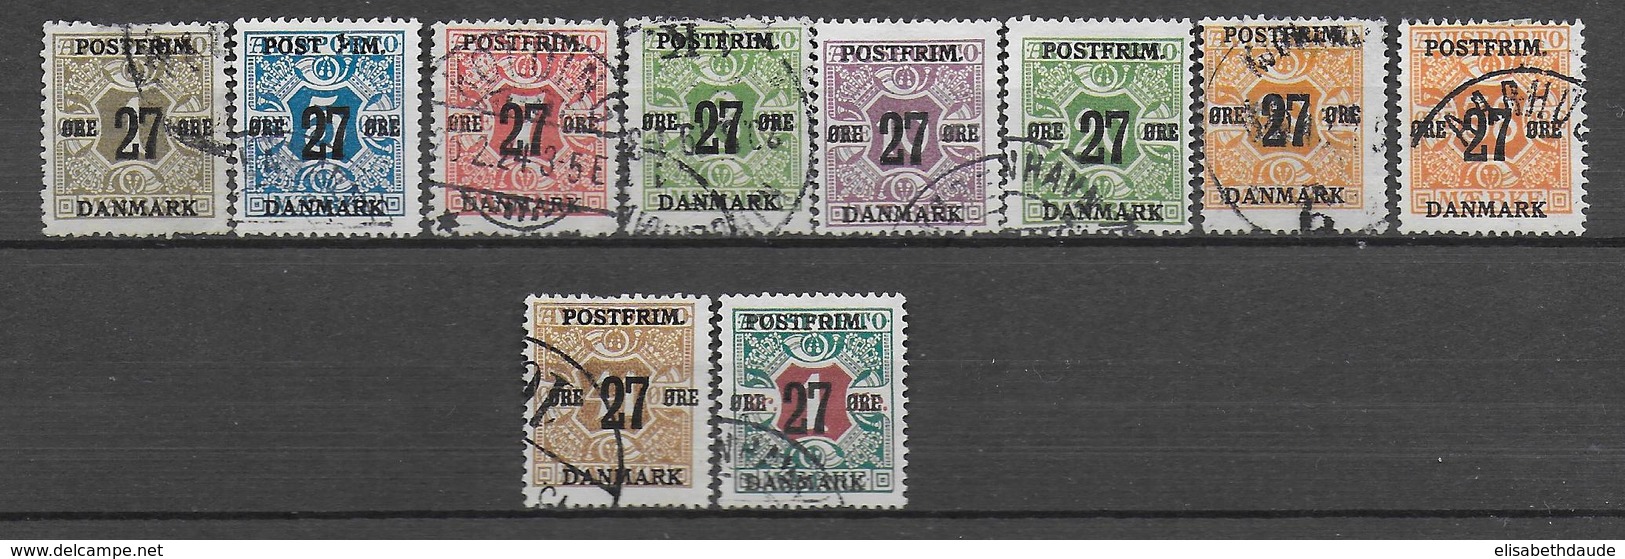 DANEMARK - 1918 - YVERT N° 95/104 OBLITERES - COTE = 200 EUR. - Used Stamps